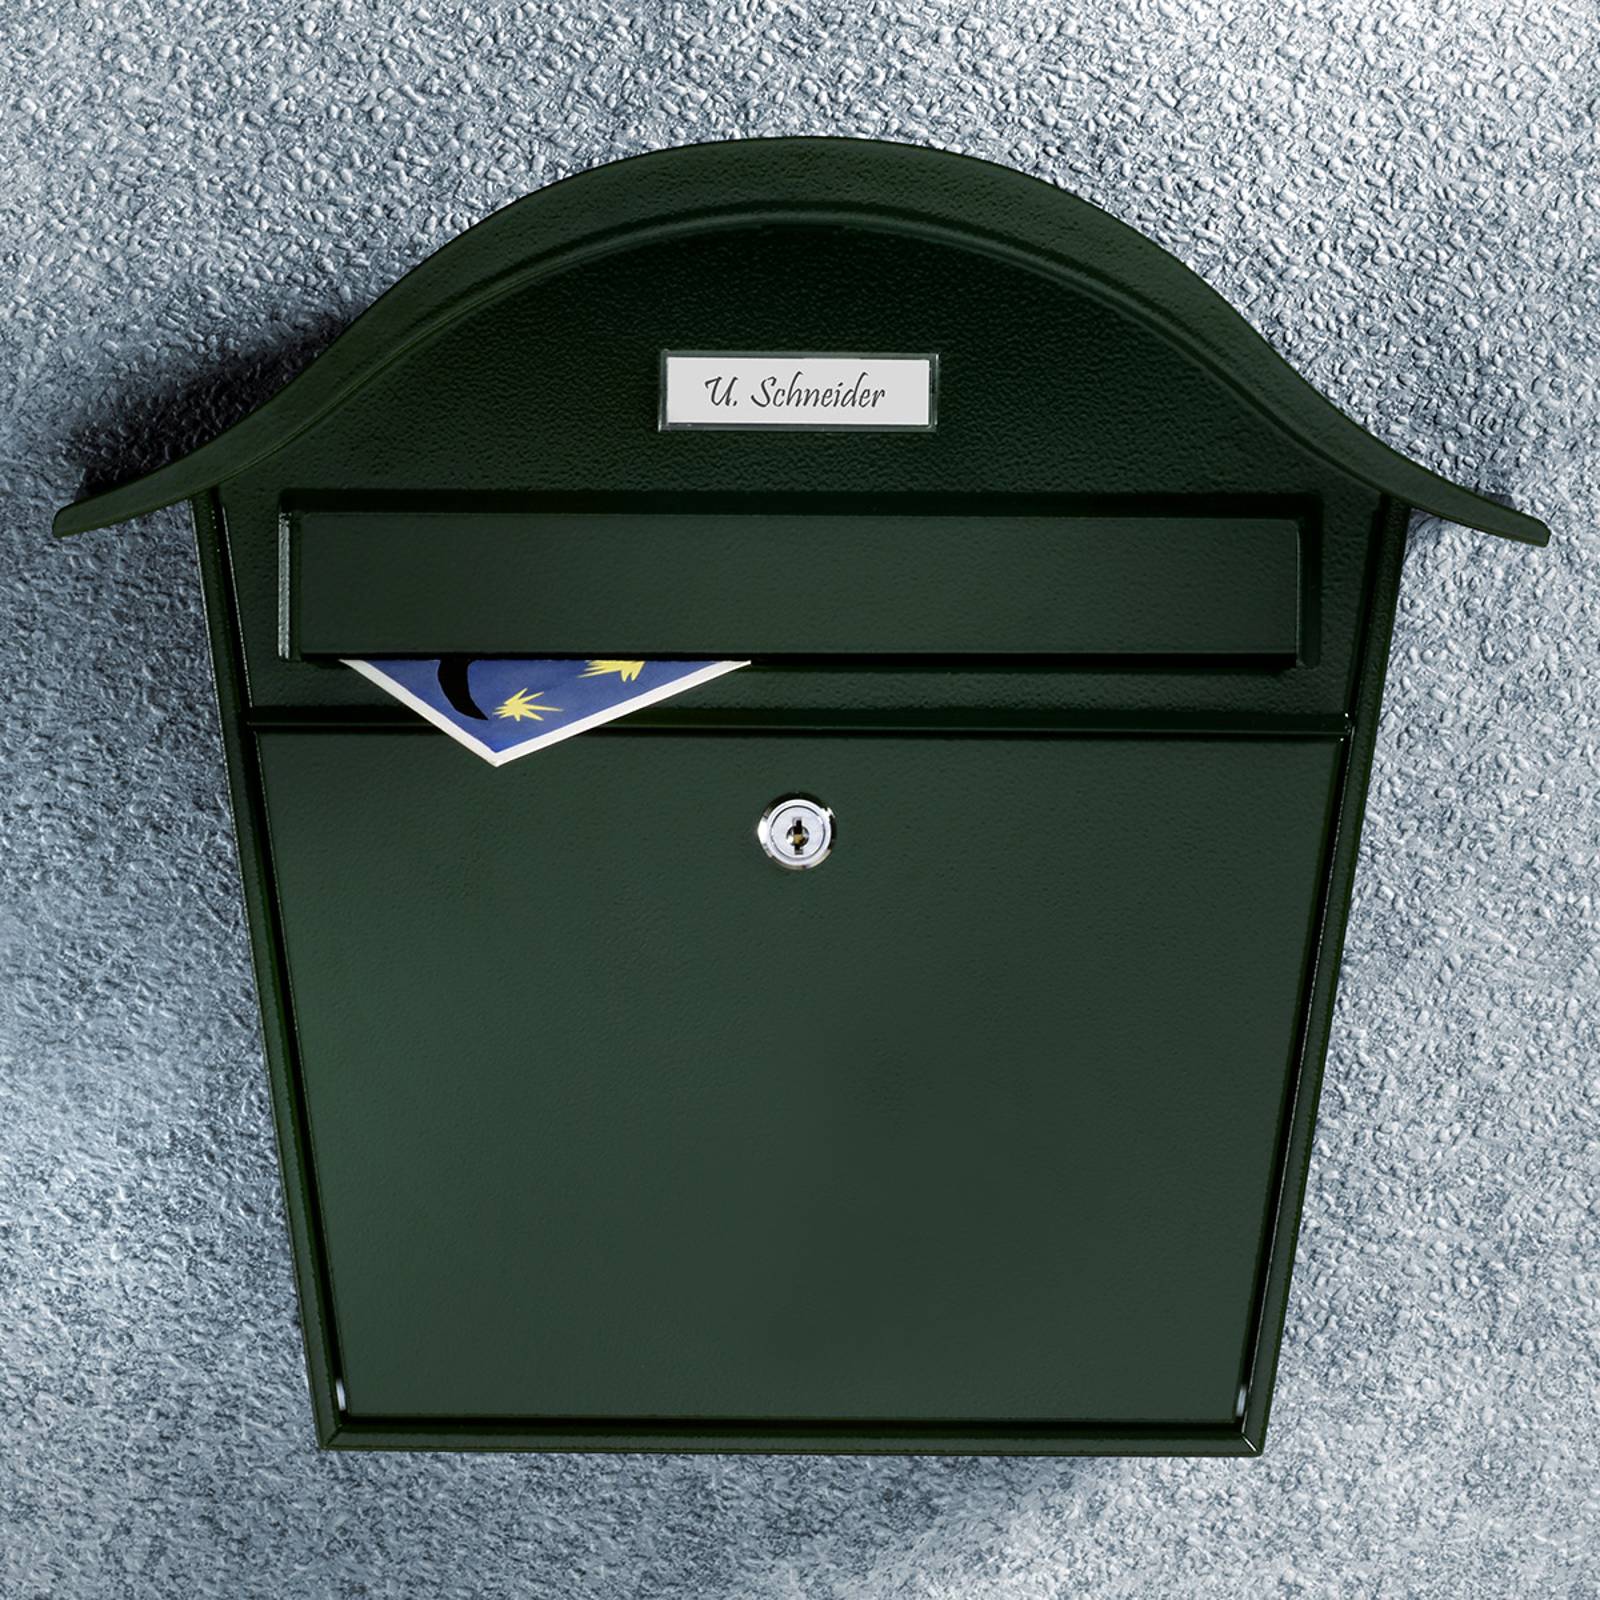 Vihreä postilaatikko Holiday 5842, terästä